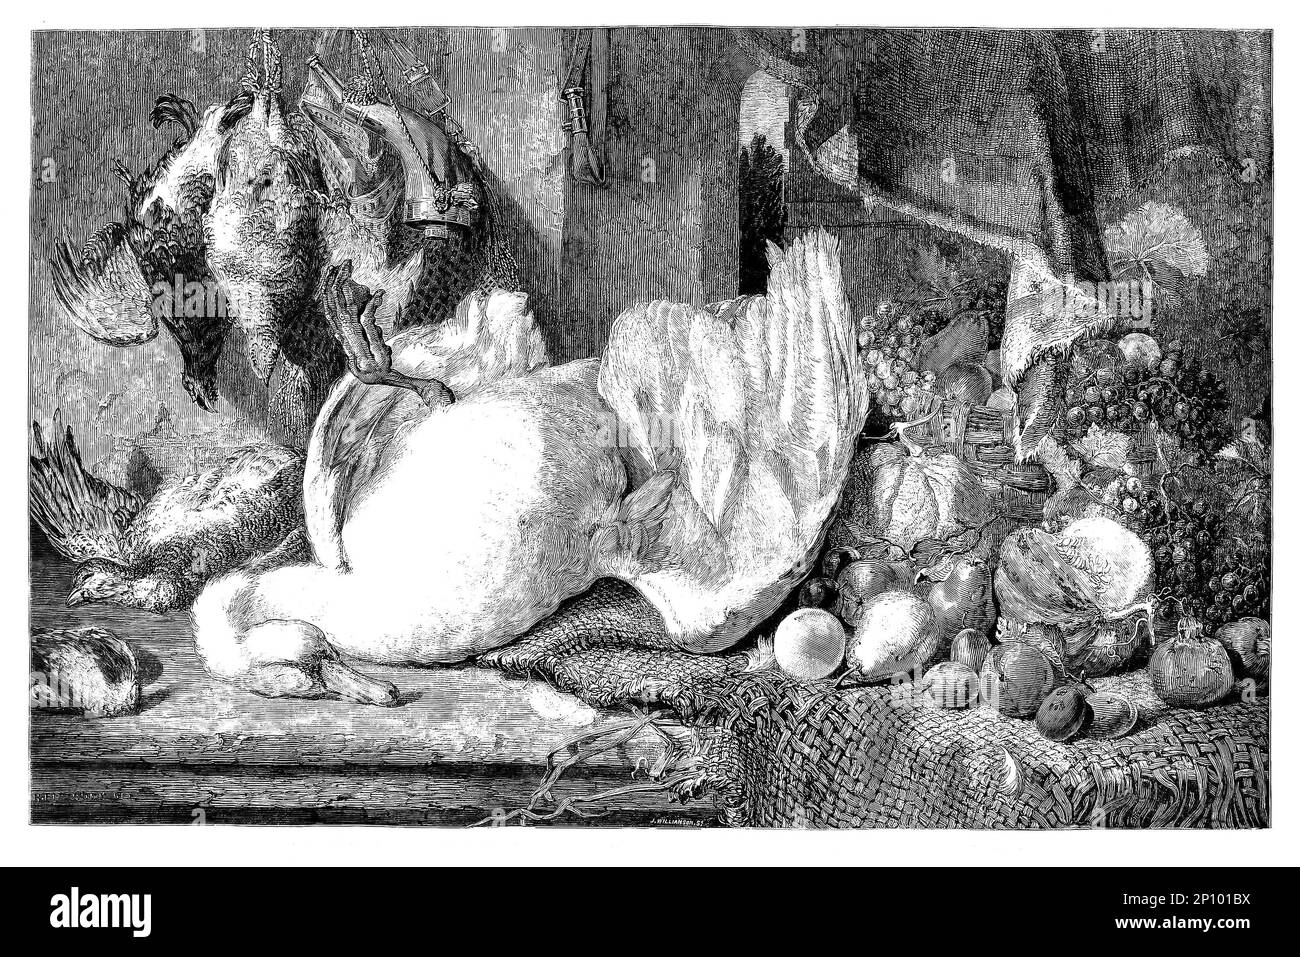 Una bodegón de cisne muerto, aves de caza y frutas exhibidas en la institución británica por el artista británico William Duffield (1816-1863) que se especializó en la pintura de frutas, verduras, carne y caza muerta. Foto de stock